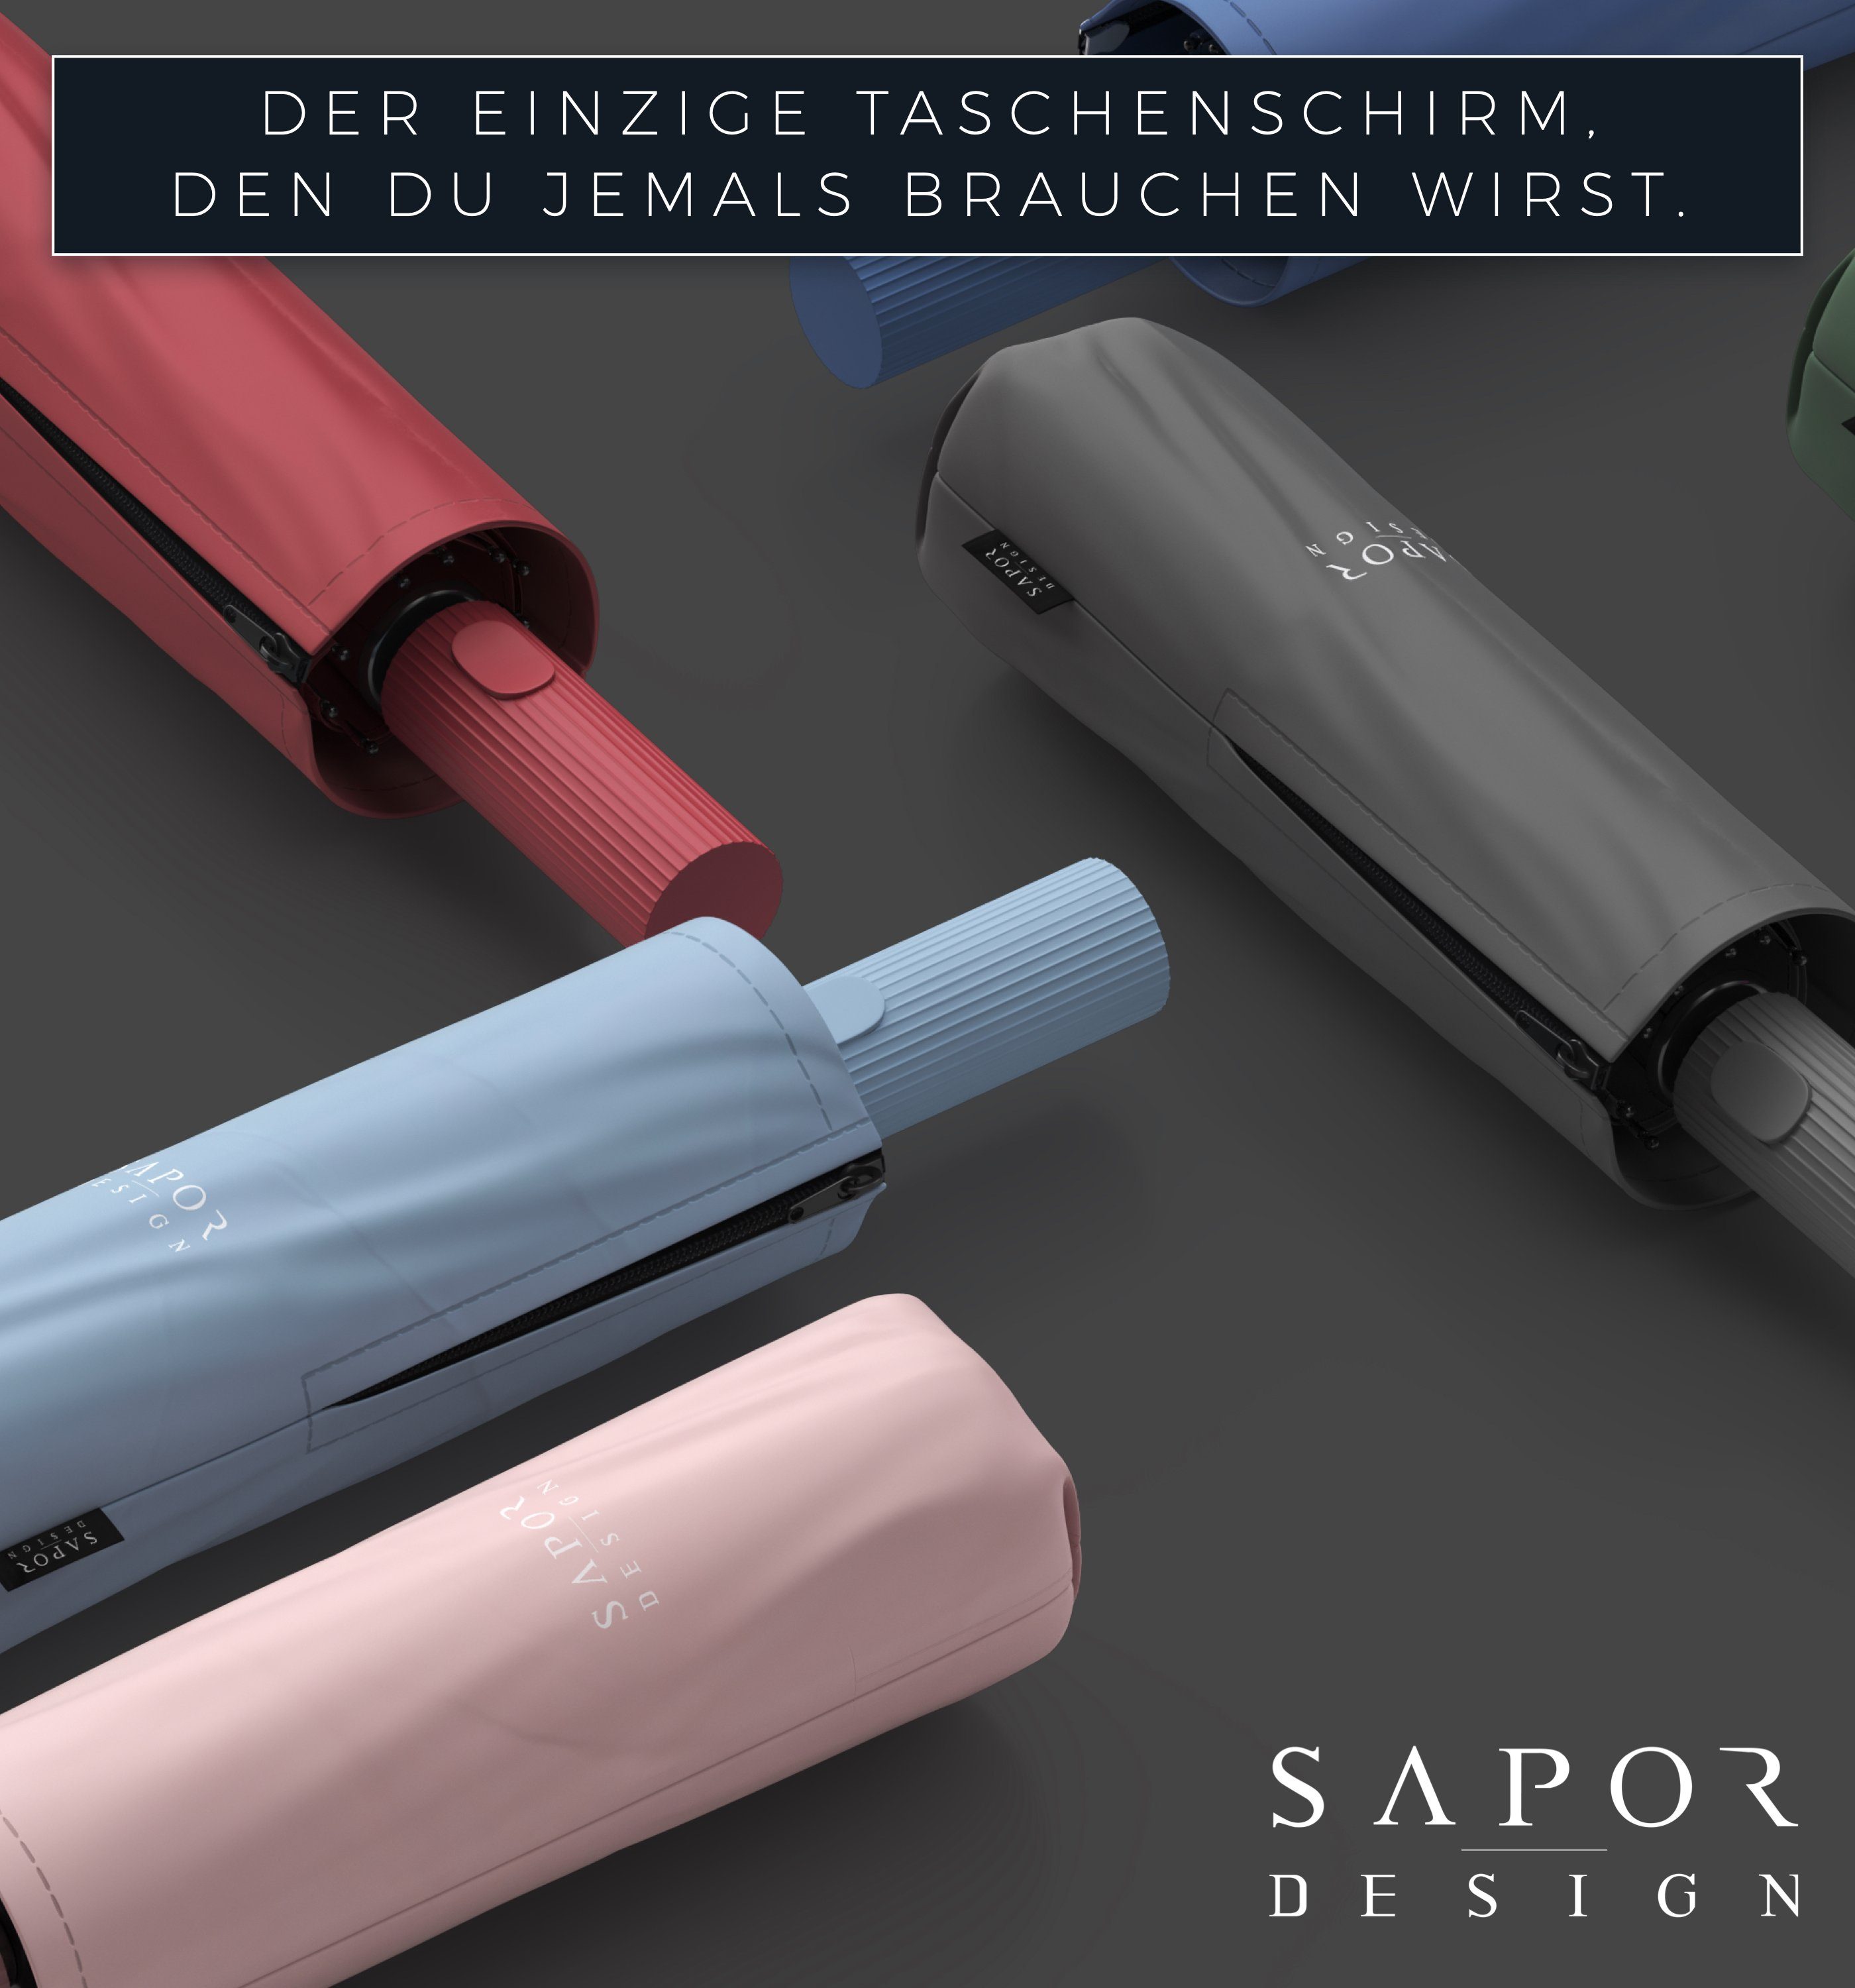 Sapor Design Taschenregenschirm Sapor Schwarz Design ICONIC Taschenschirm